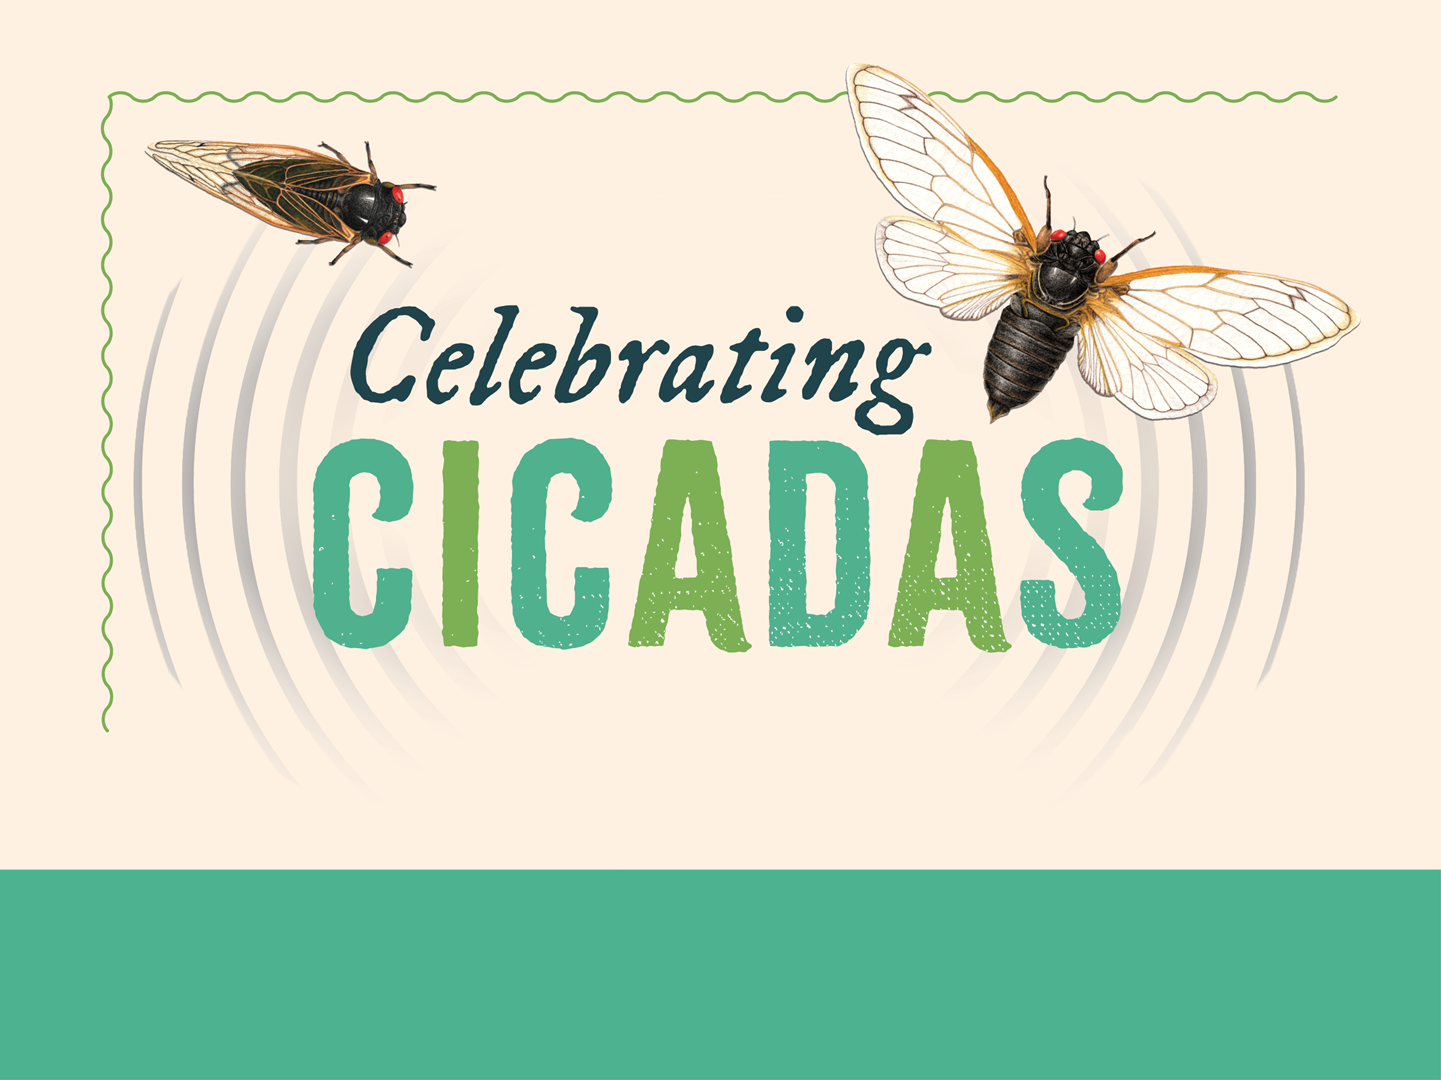 Celebrating Cicadas artwork